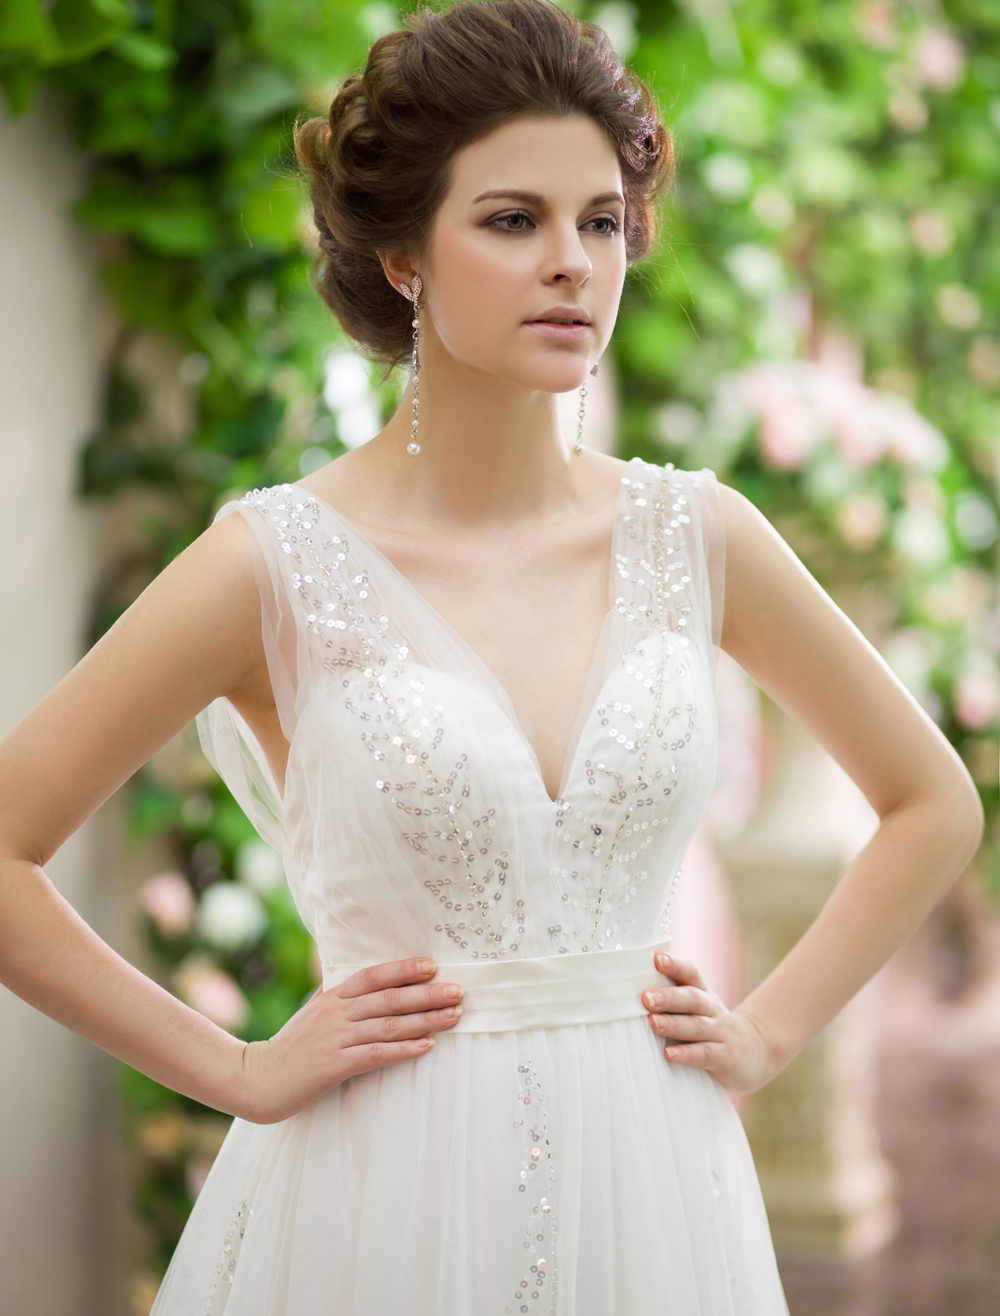 Backless Wedding Dress - Milanoo.com